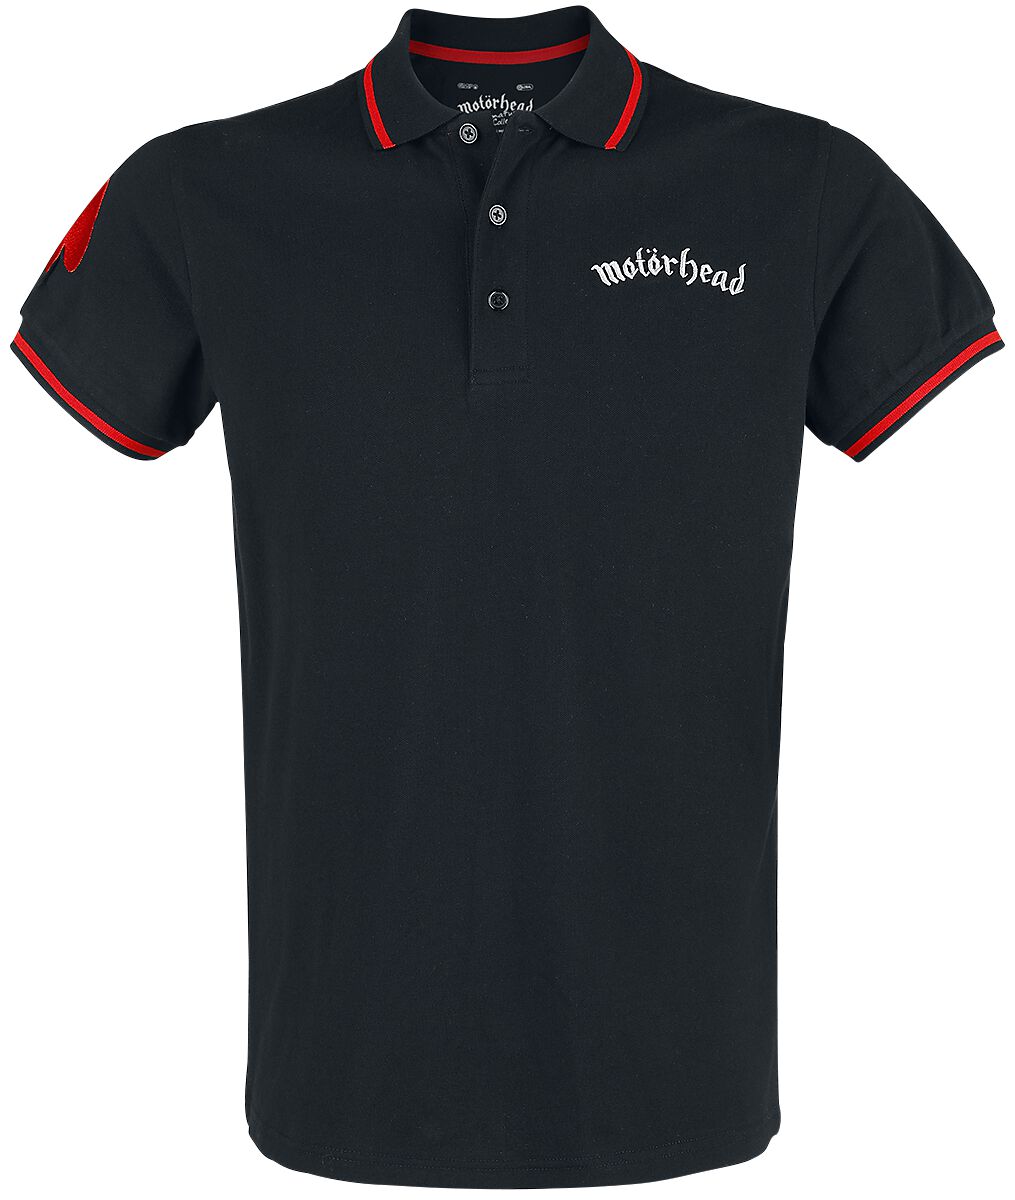 Motörhead Poloshirt - EMP Signature Collection - M bis 3XL - für Männer - Größe L - schwarz/rot  - EMP exklusives Merchandise!